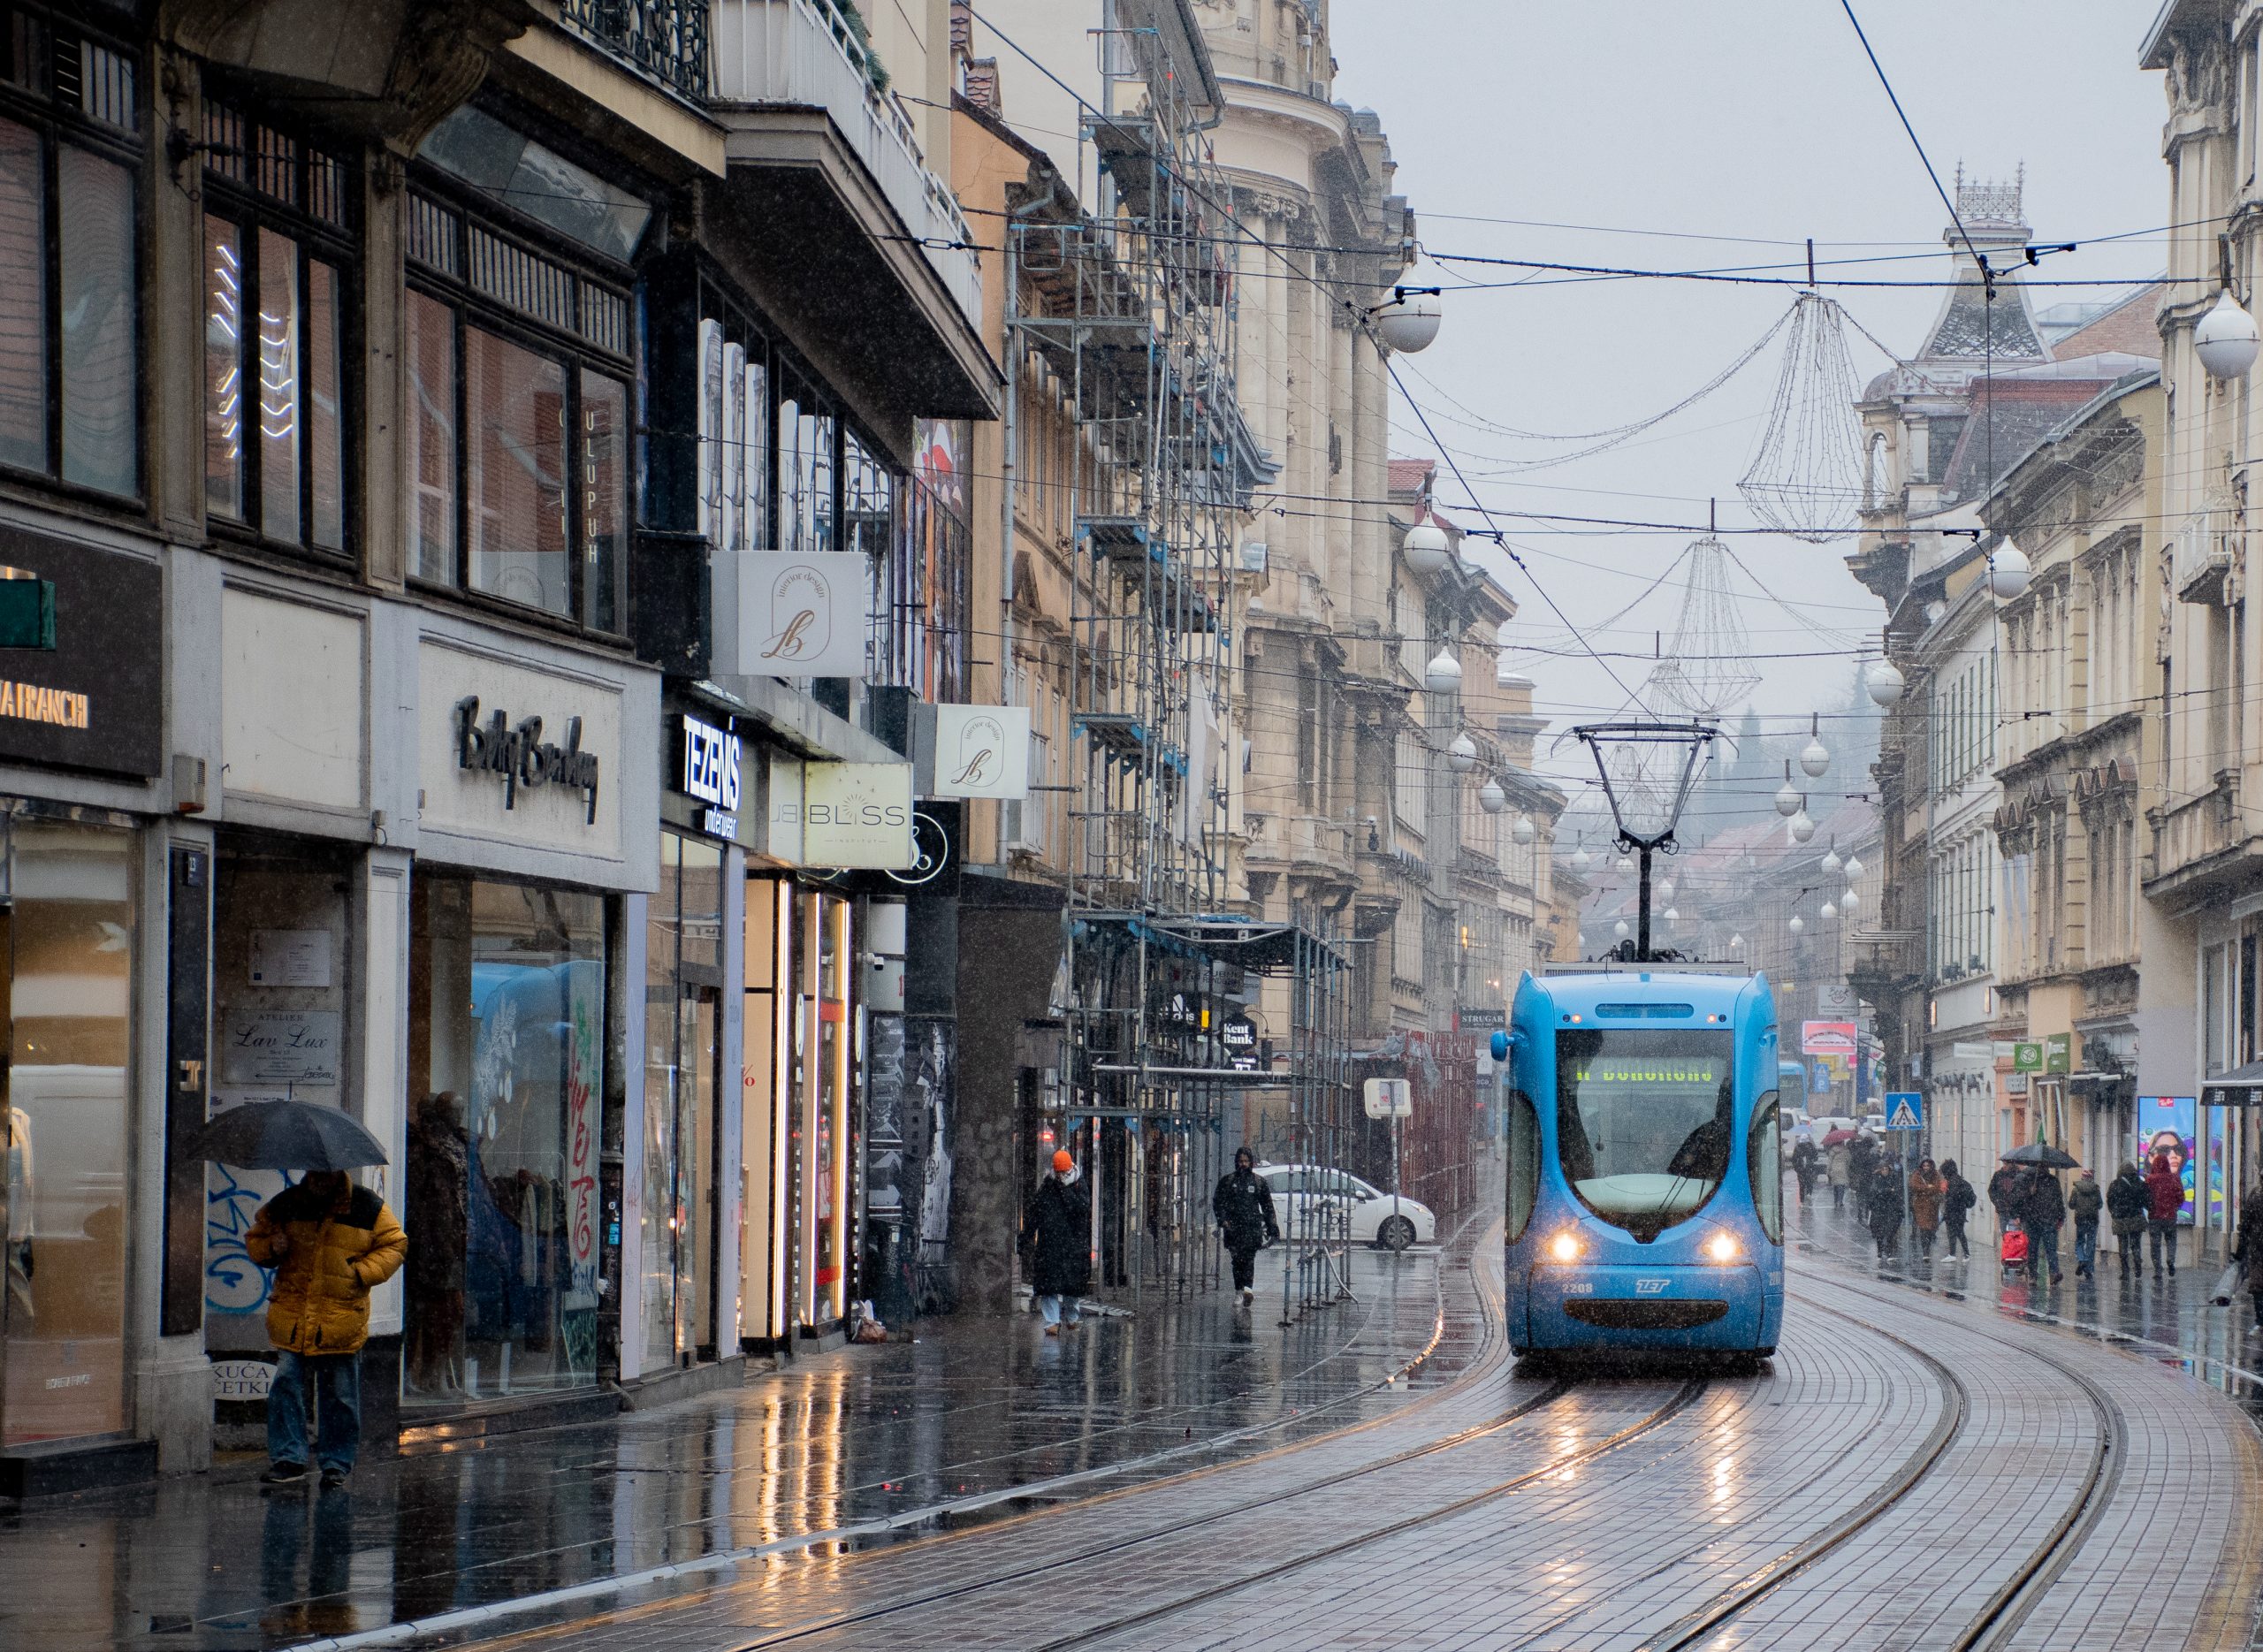 De stad wordt gekenmerkt door de blauwe tram die je overal tegenkomt